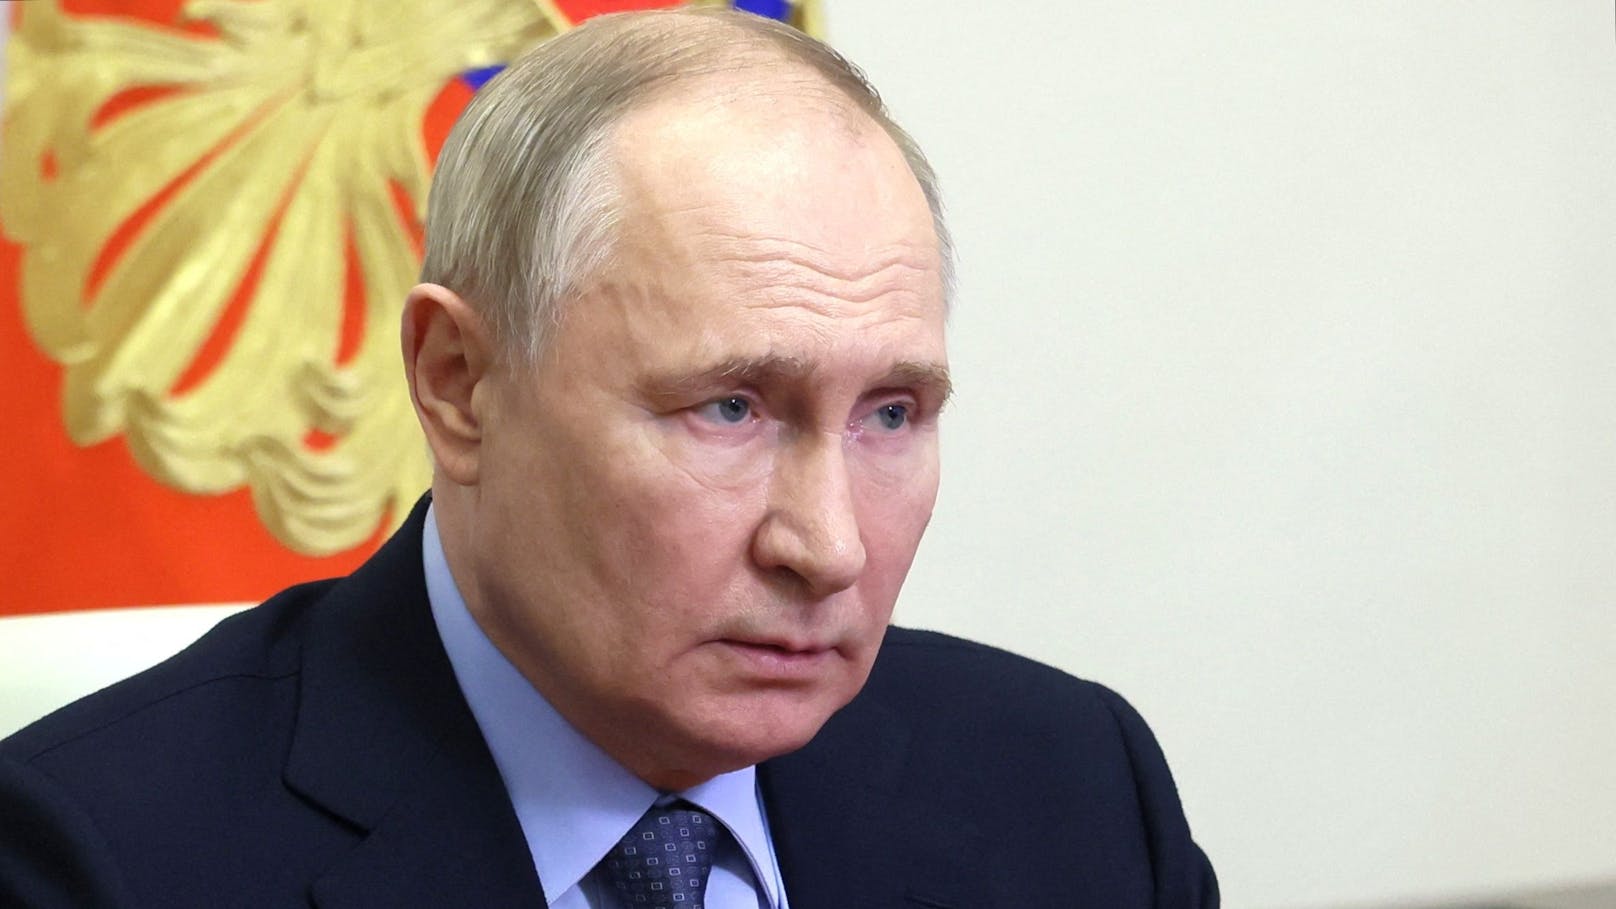 "Werdet massakriert" – IS-Terroristen drohen Putin